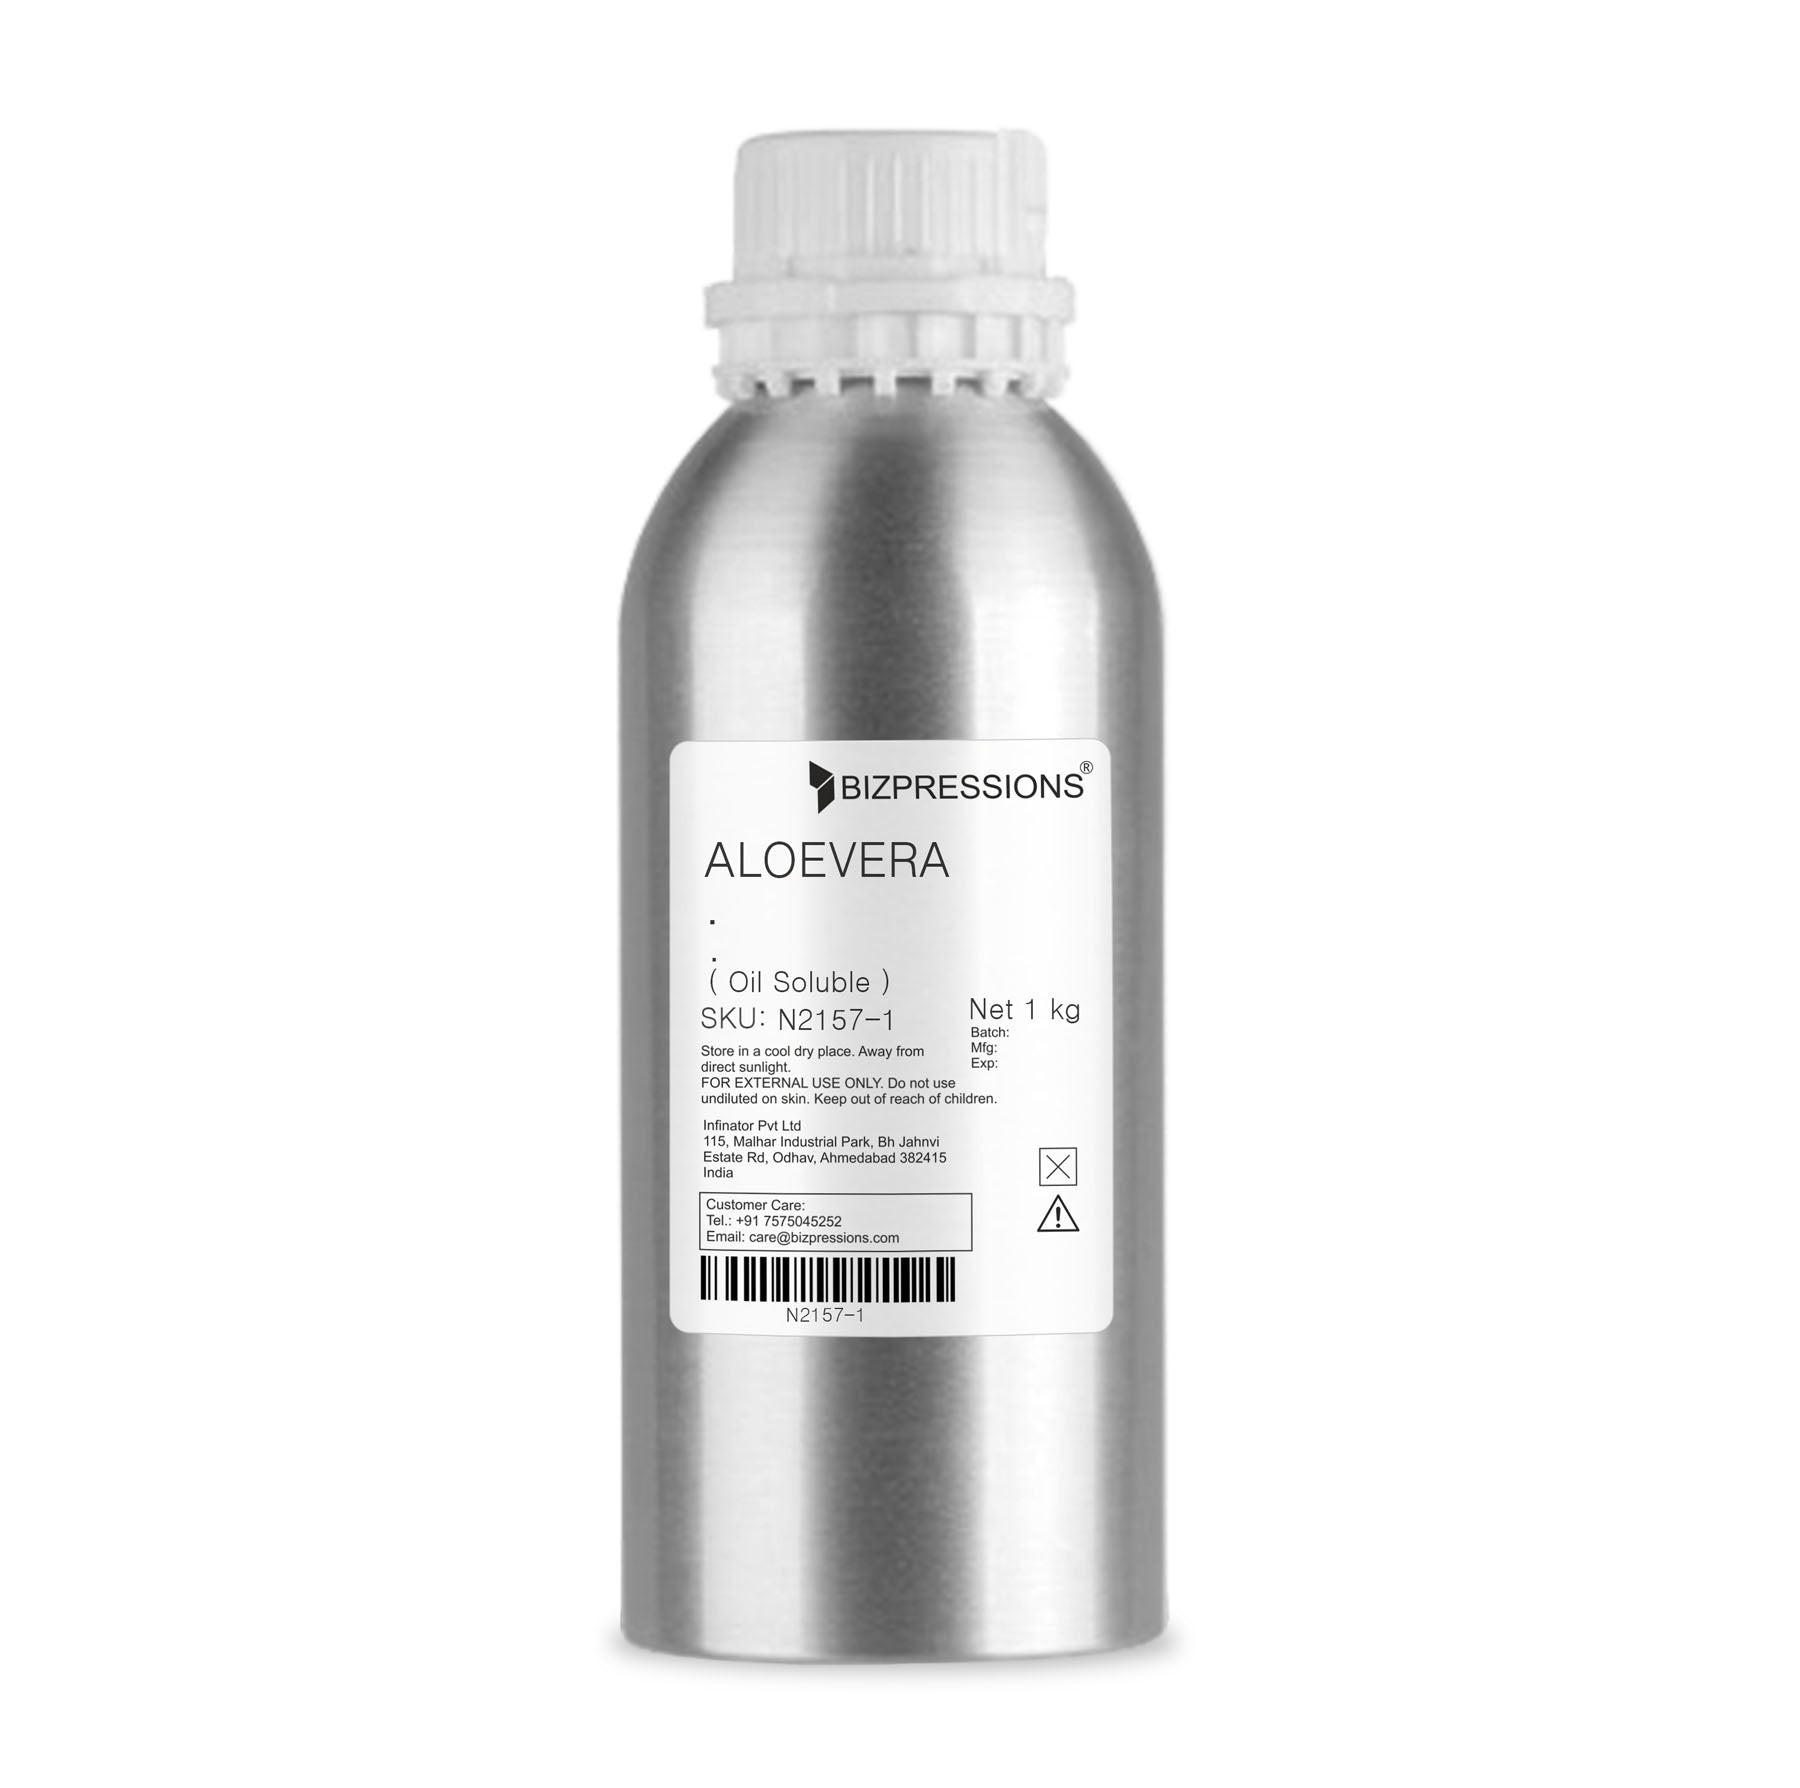 ALOEVERA - Fragrance ( Oil Soluble ) - 1 kg